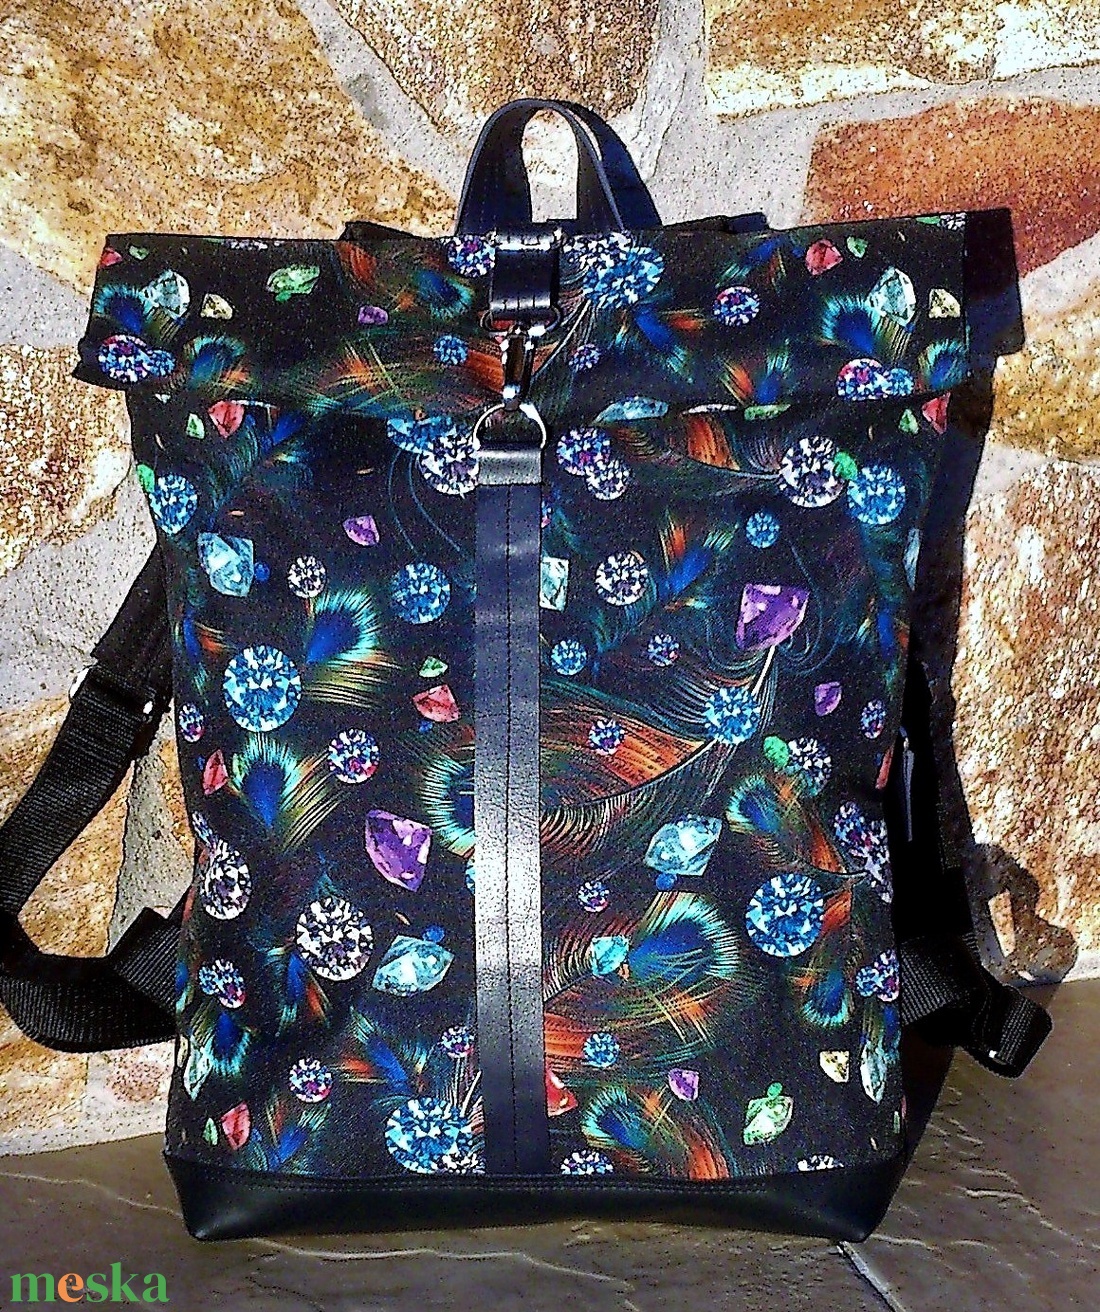 Türkizkék- kék - fekete hátitáska nagyobb méret - laptop táska valódi bőrrel - táska & tok - hátizsák - roll top hátizsák - Meska.hu